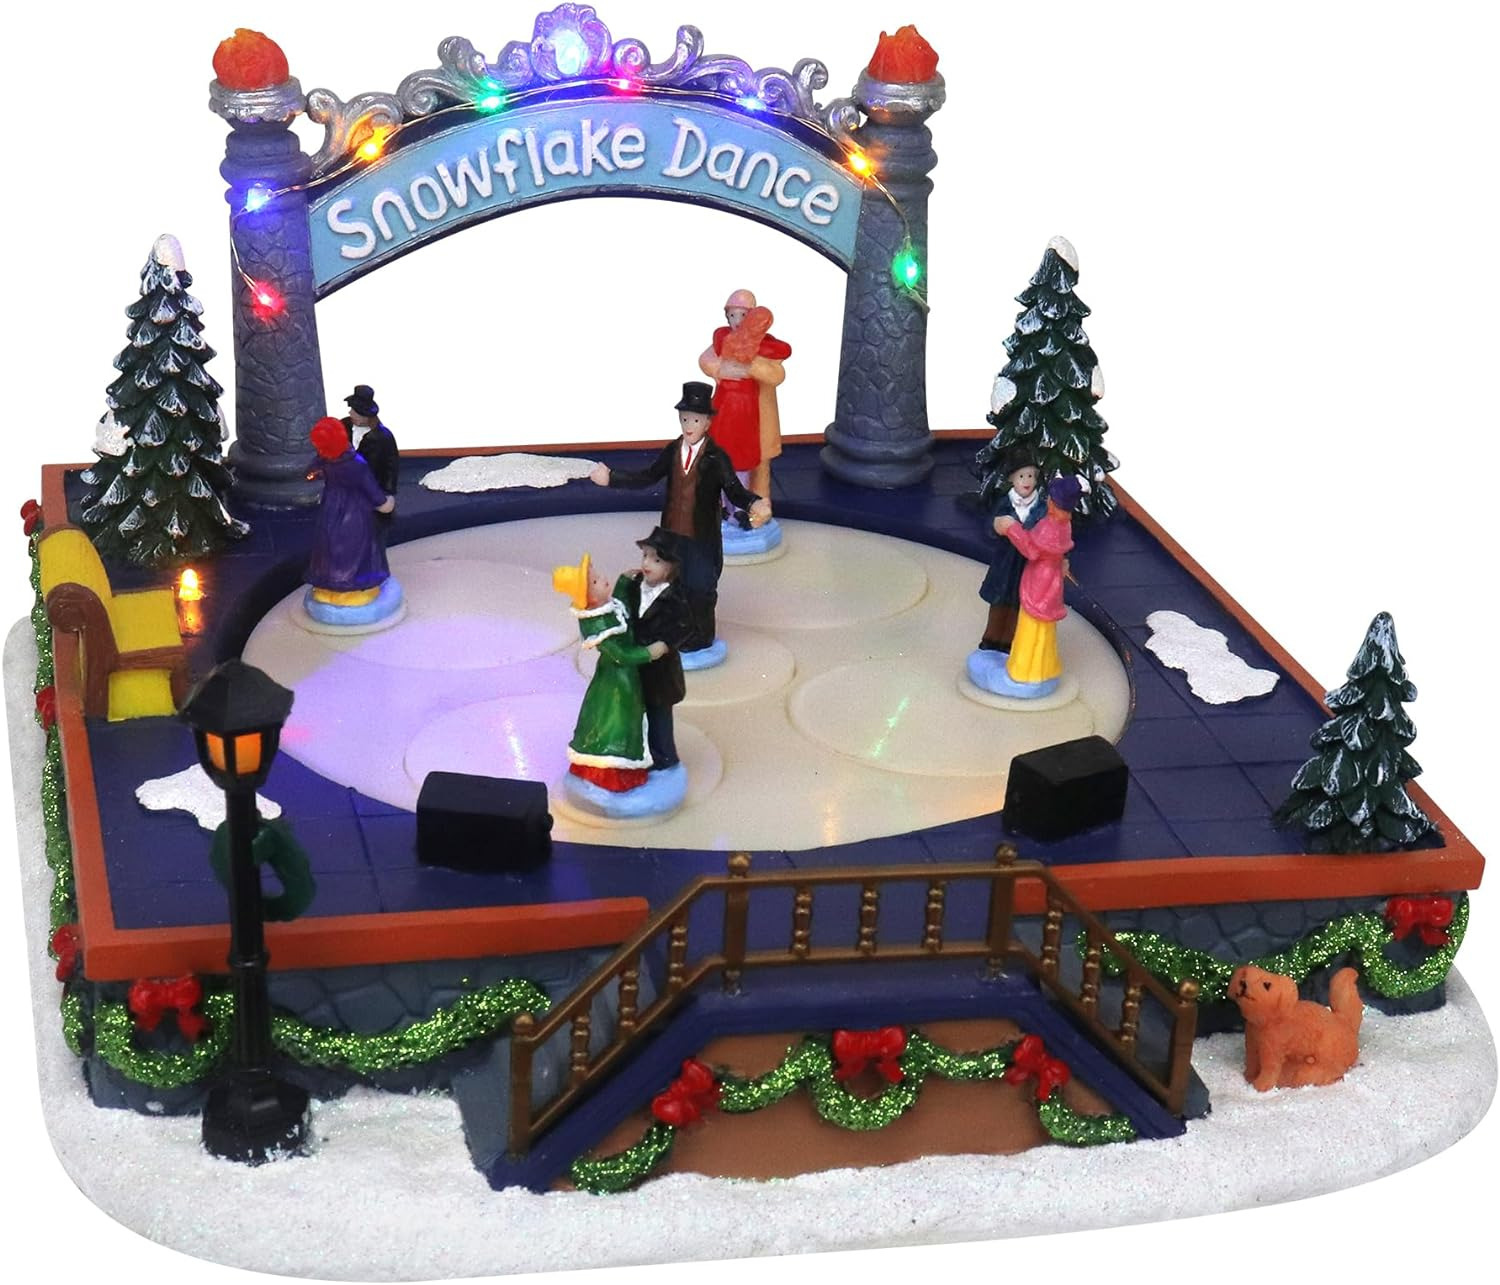 Ballroom Dance at the Snowflake Ball - Animated Christmas Village Tabletop with 